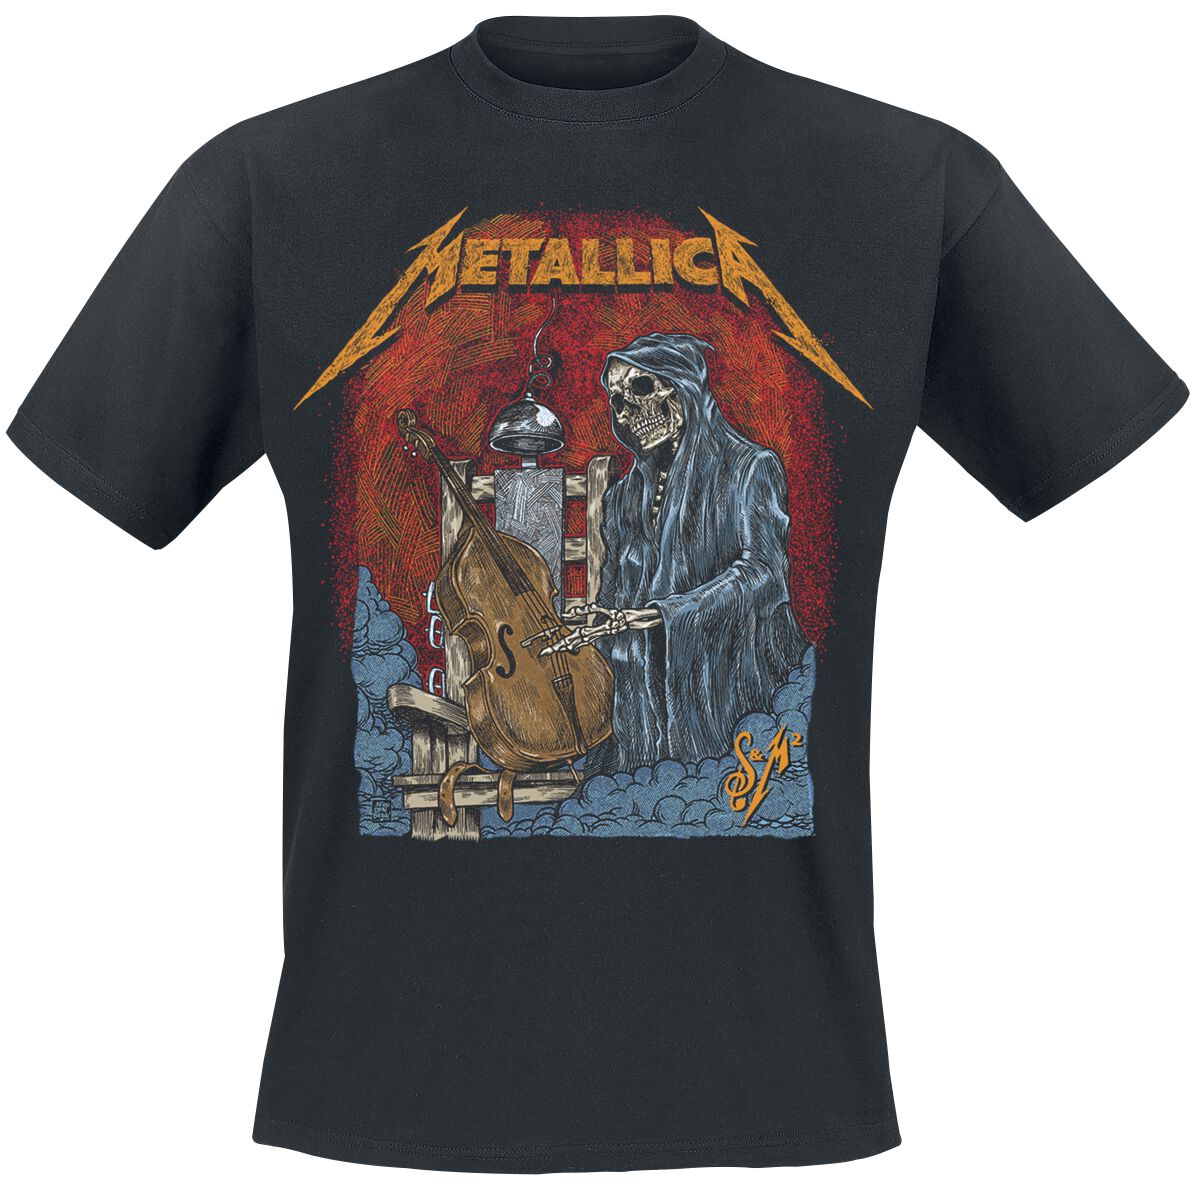 Metallica T-Shirt - S&M2 Cello Reaper - S bis 5XL - für Männer - Größe L - schwarz  - Lizenziertes Merchandise!